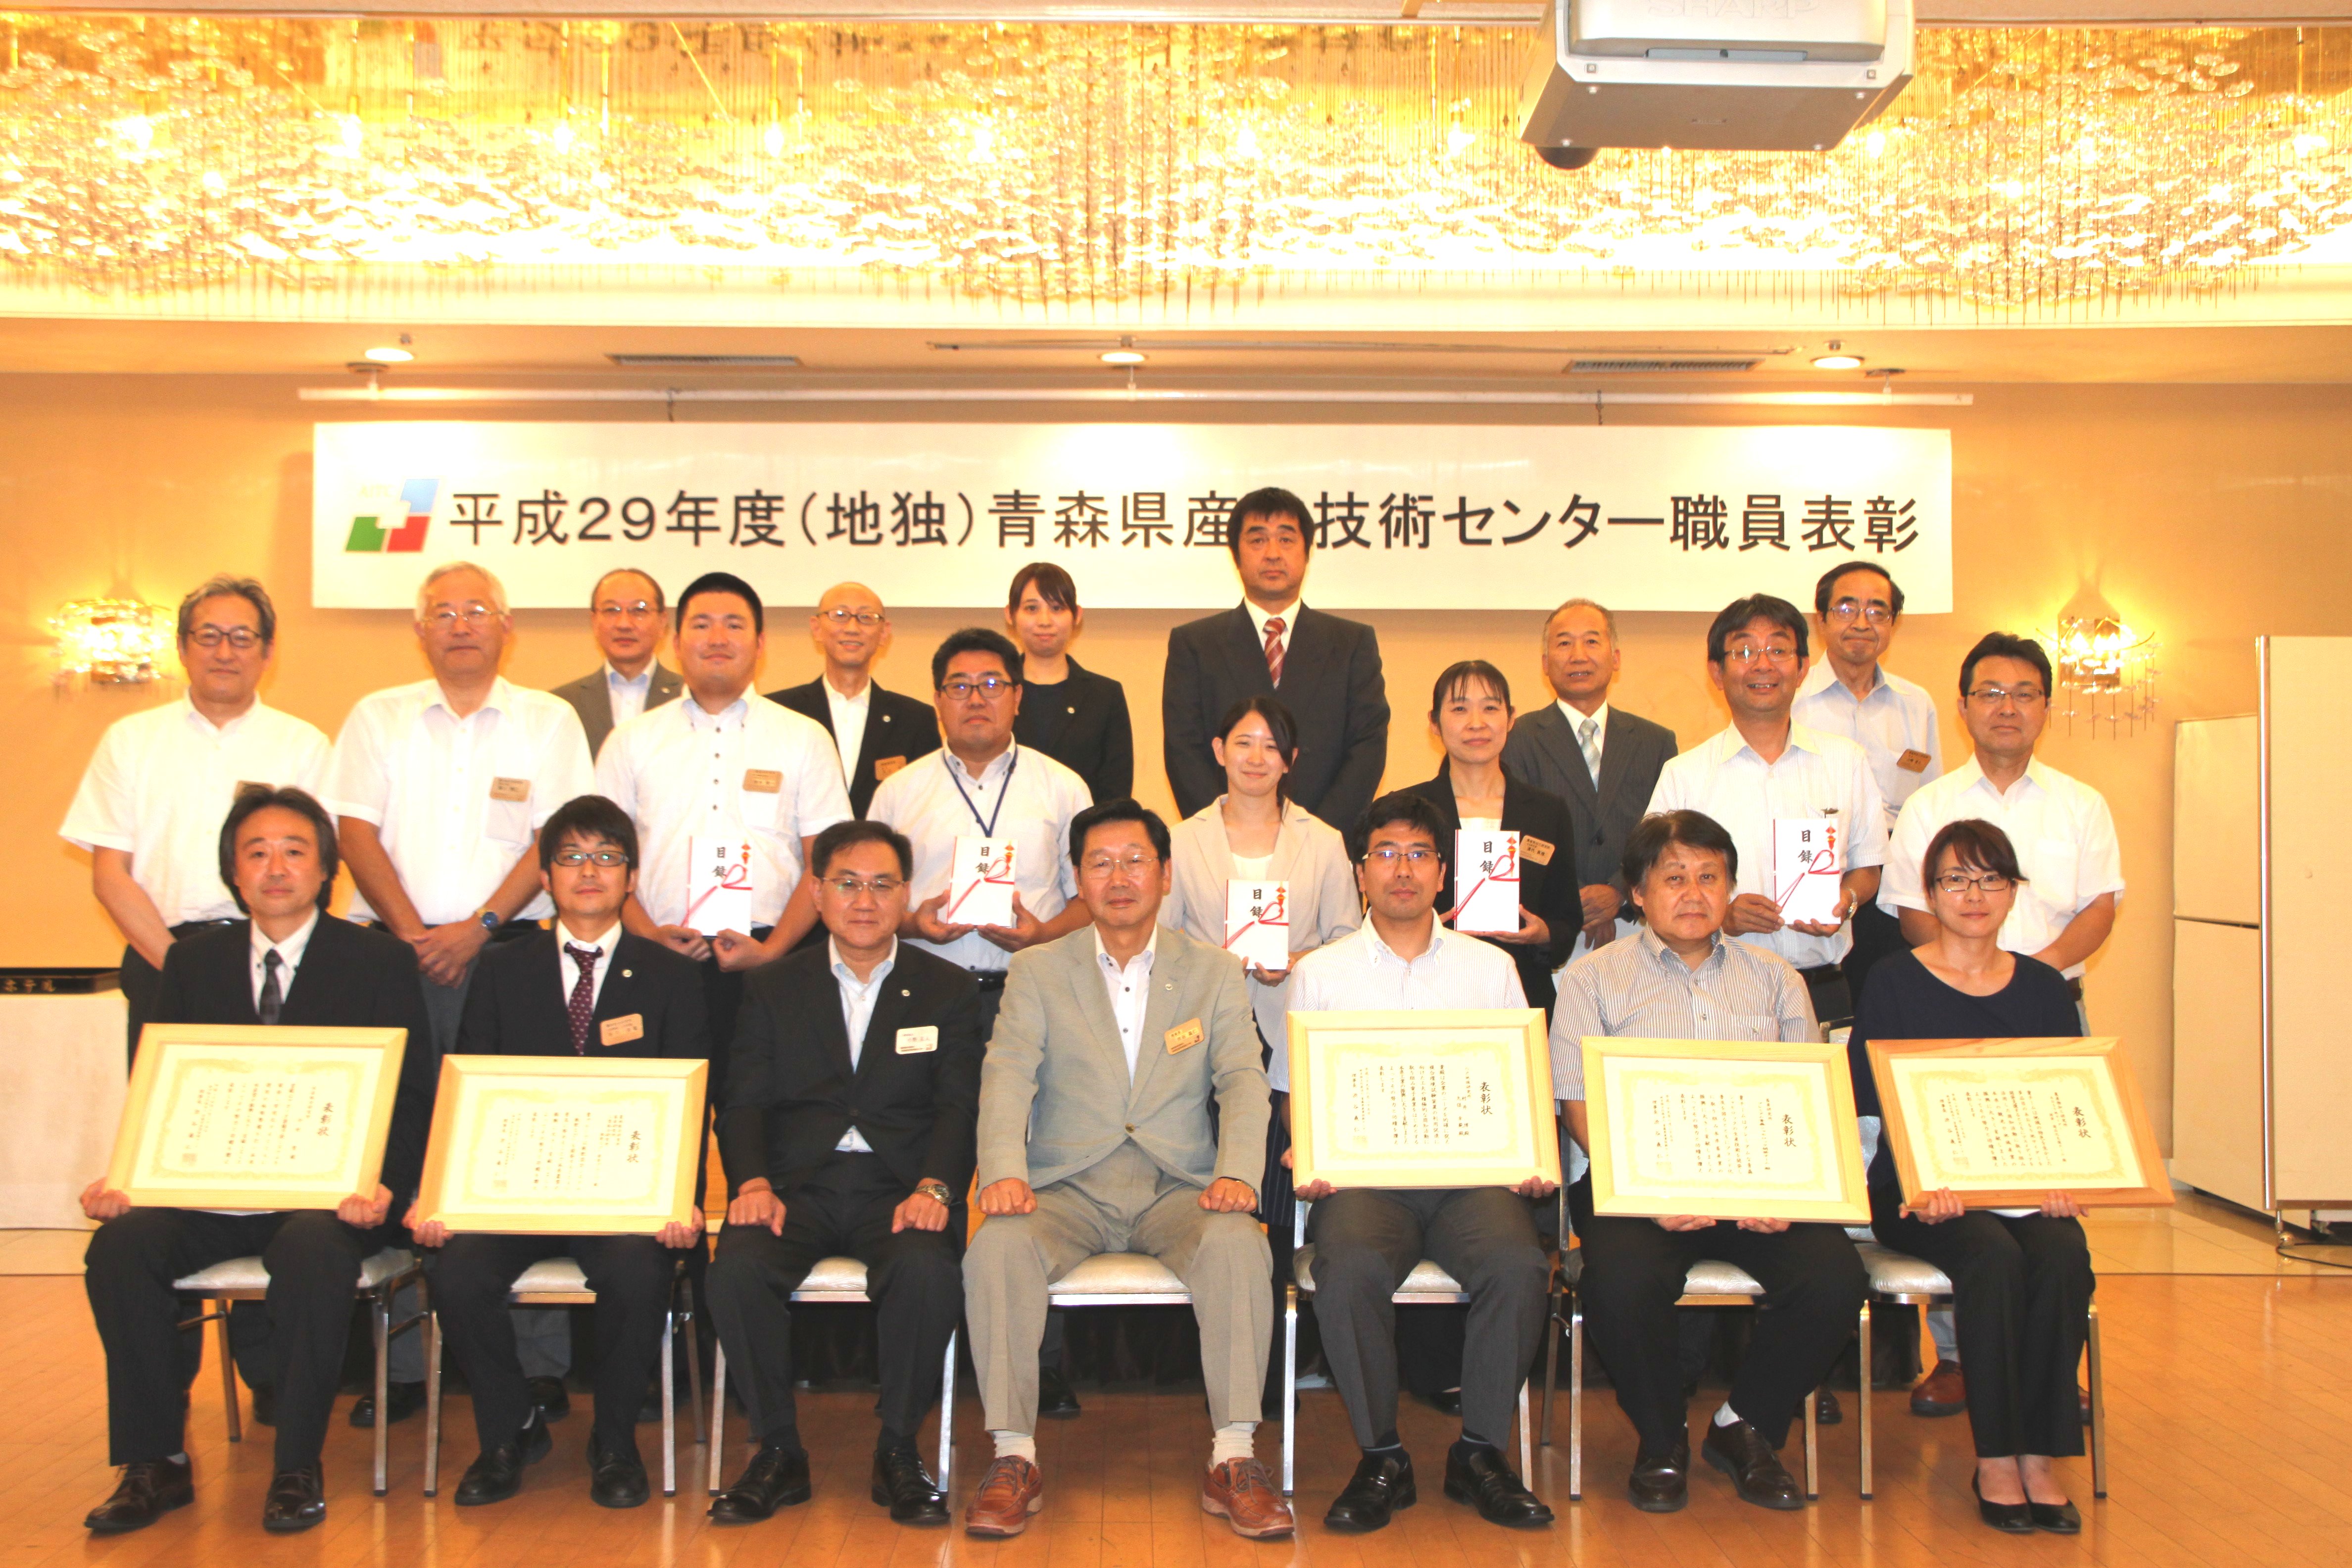  平成29年度職員表彰受賞者の集合写真